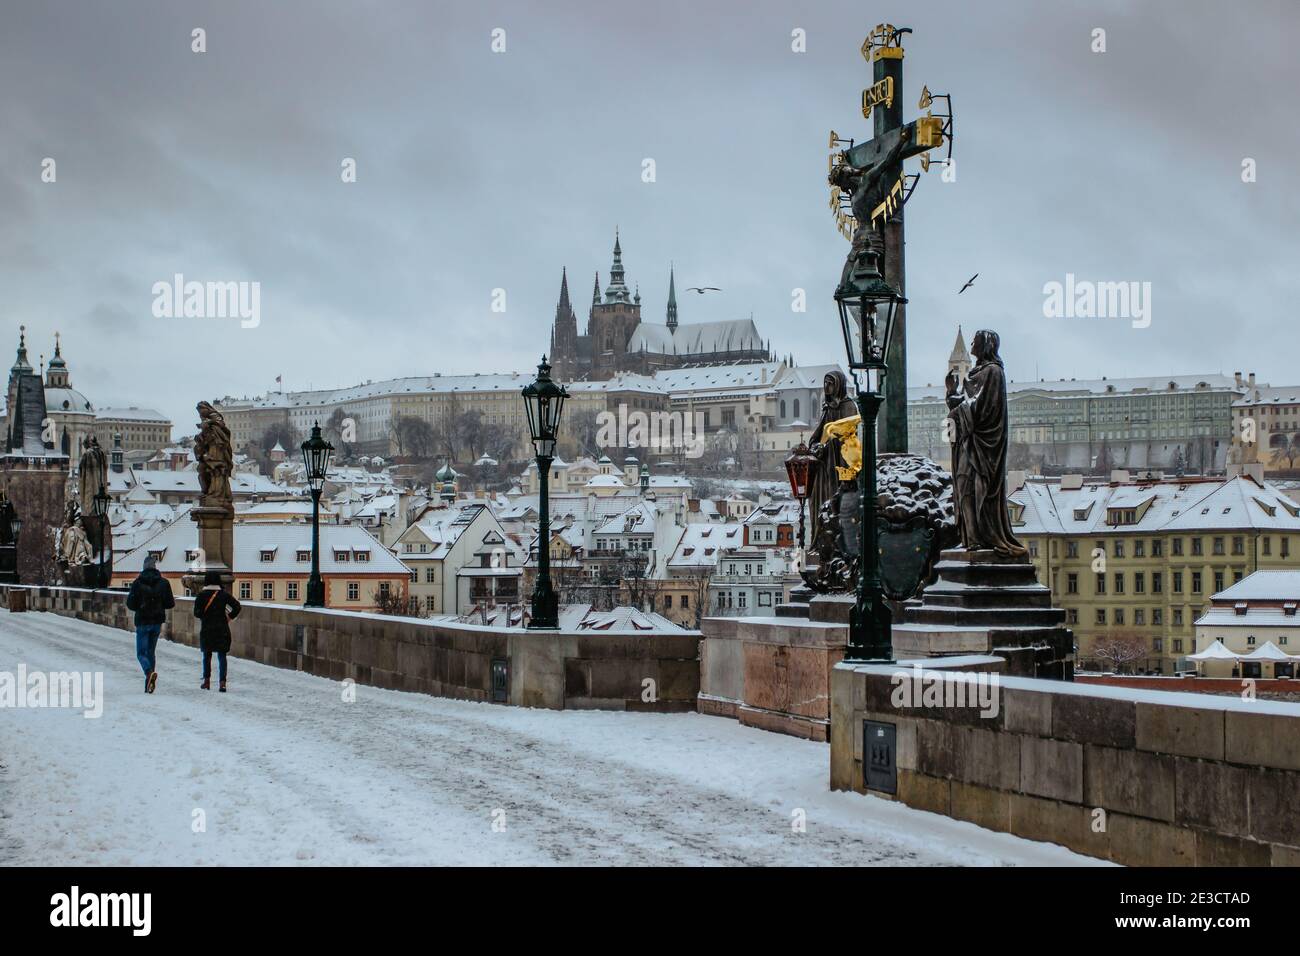 Vista postal del Castillo de Praga desde el Puente de Carlos, república Checa.destino turístico famoso.panorama de invierno de Praga.día de nieve en la ciudad.increíble Foto de stock